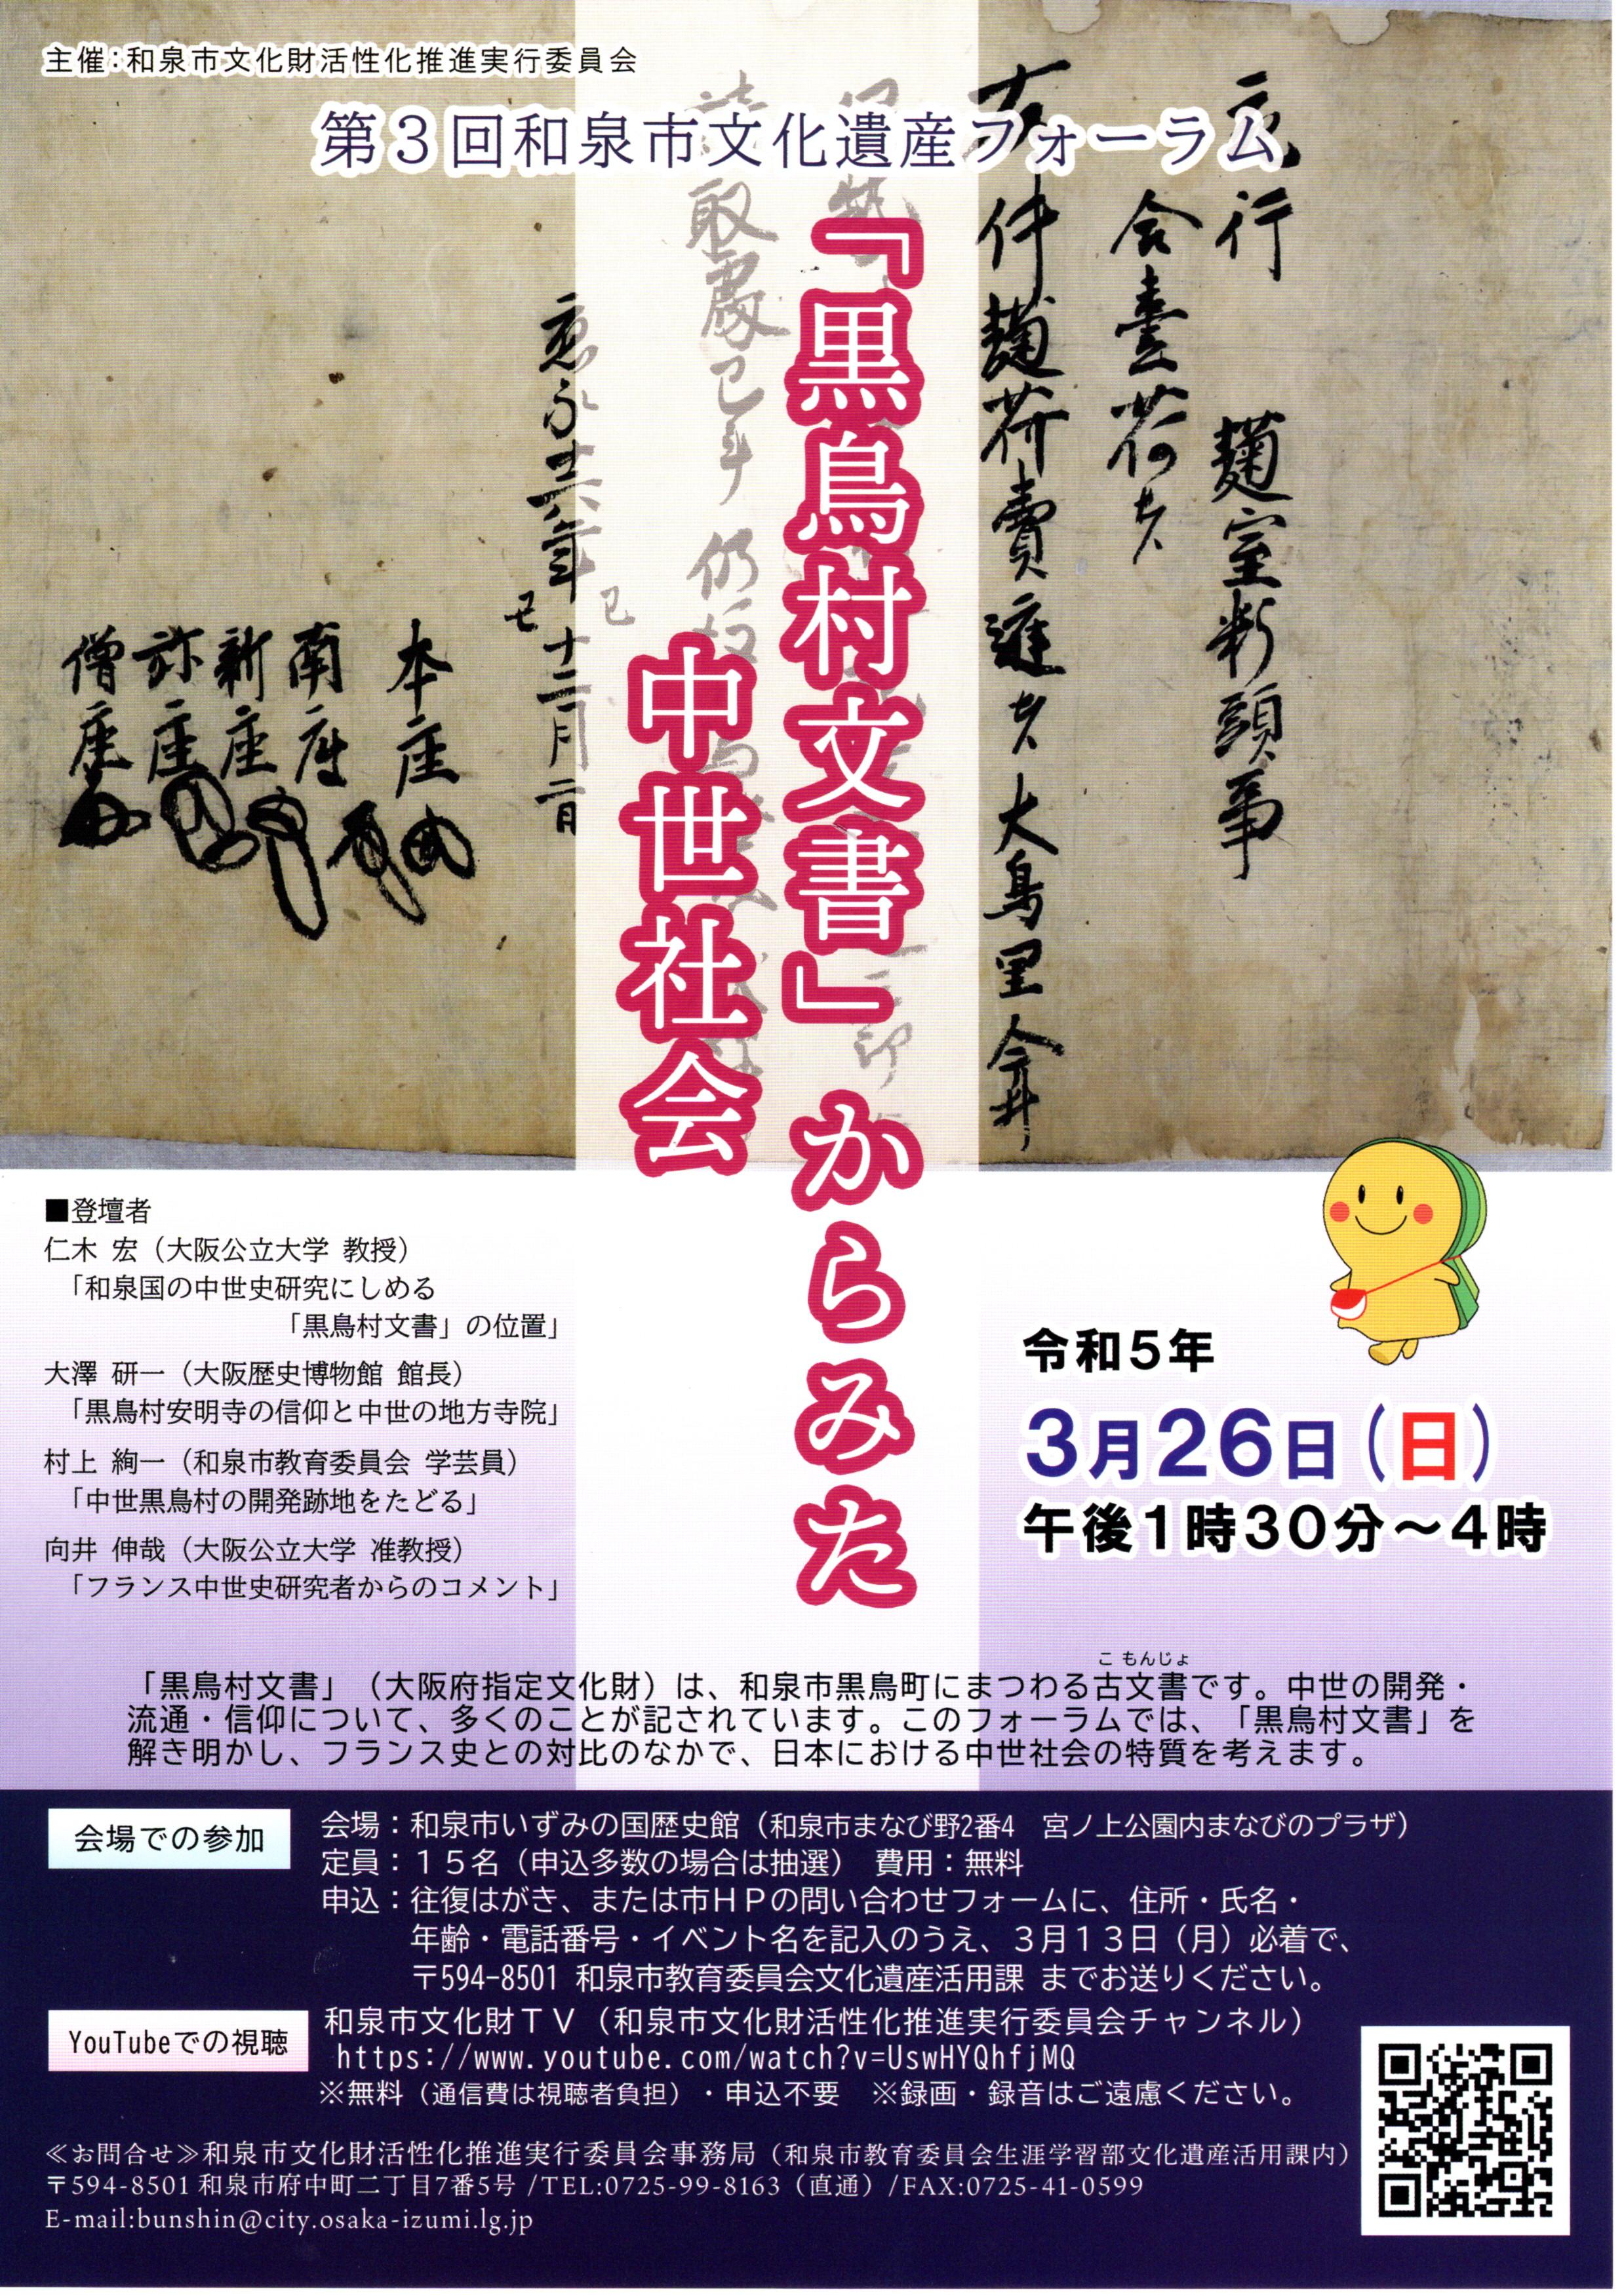 【終了】第3回和泉市文化遺産フォーラム「黒鳥村文書」からみた中世社会